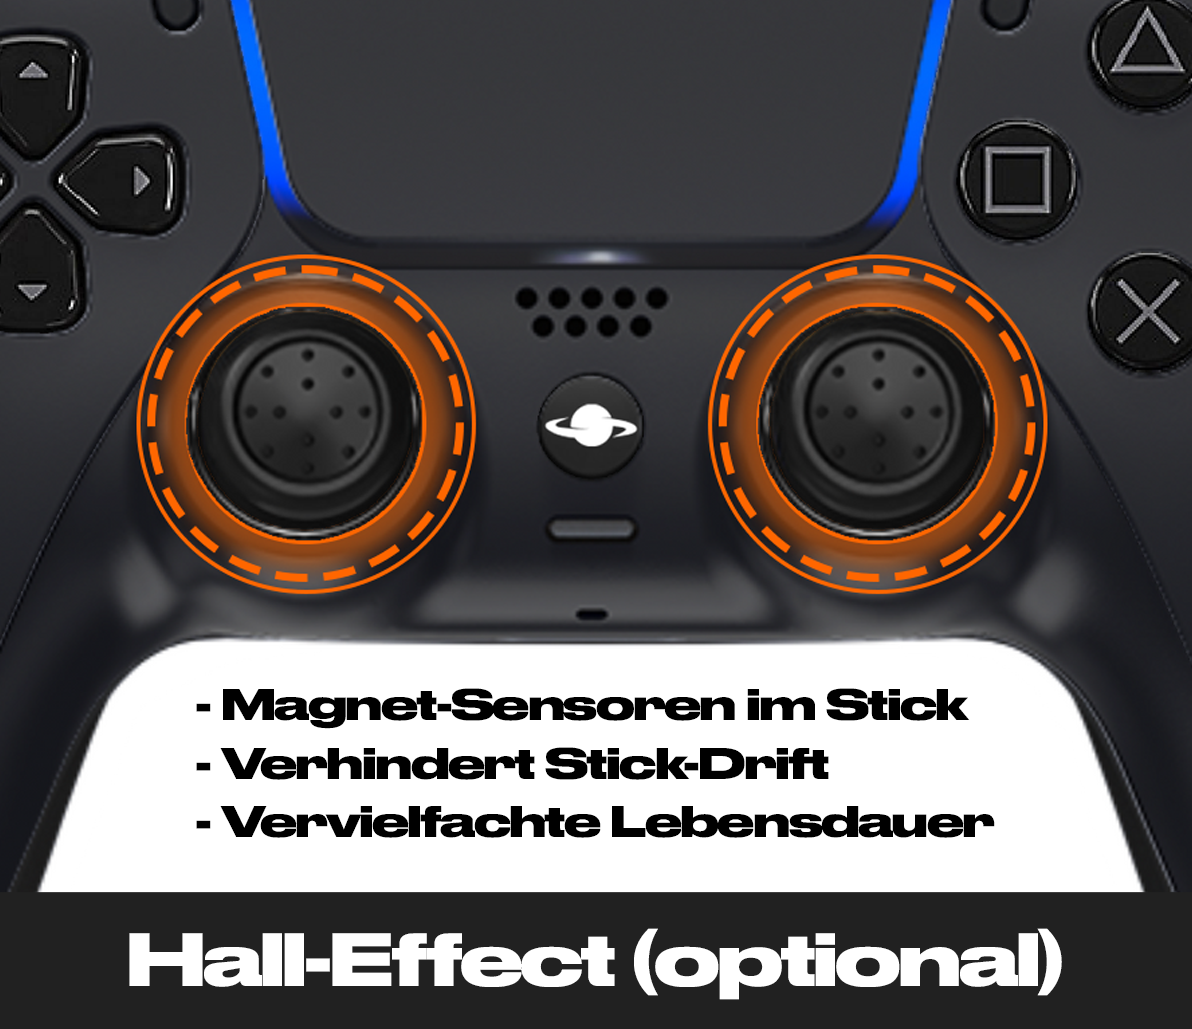 PS5 Custom Controller 'HADOKEN'